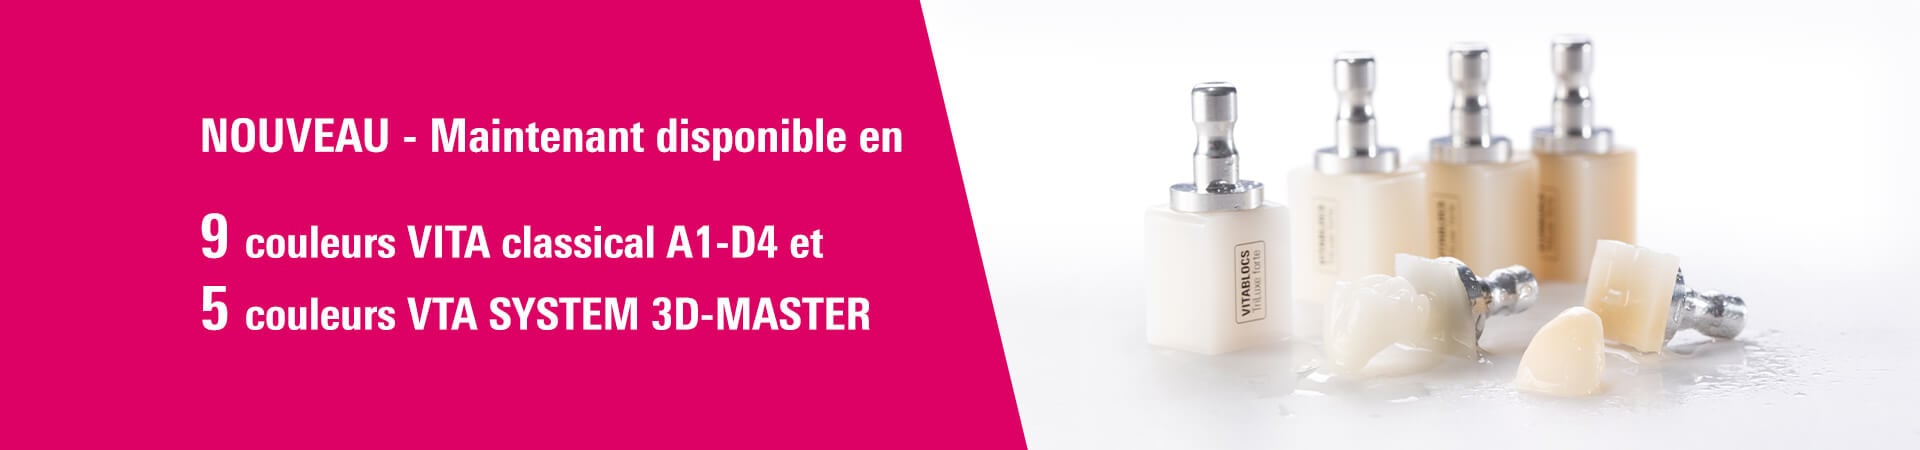 NOUVEAU - Maintenant disponible en 9 couleurs VITA classical A1-D4 et 5 couleurs VITA SYSTEM 3D-MASTER.